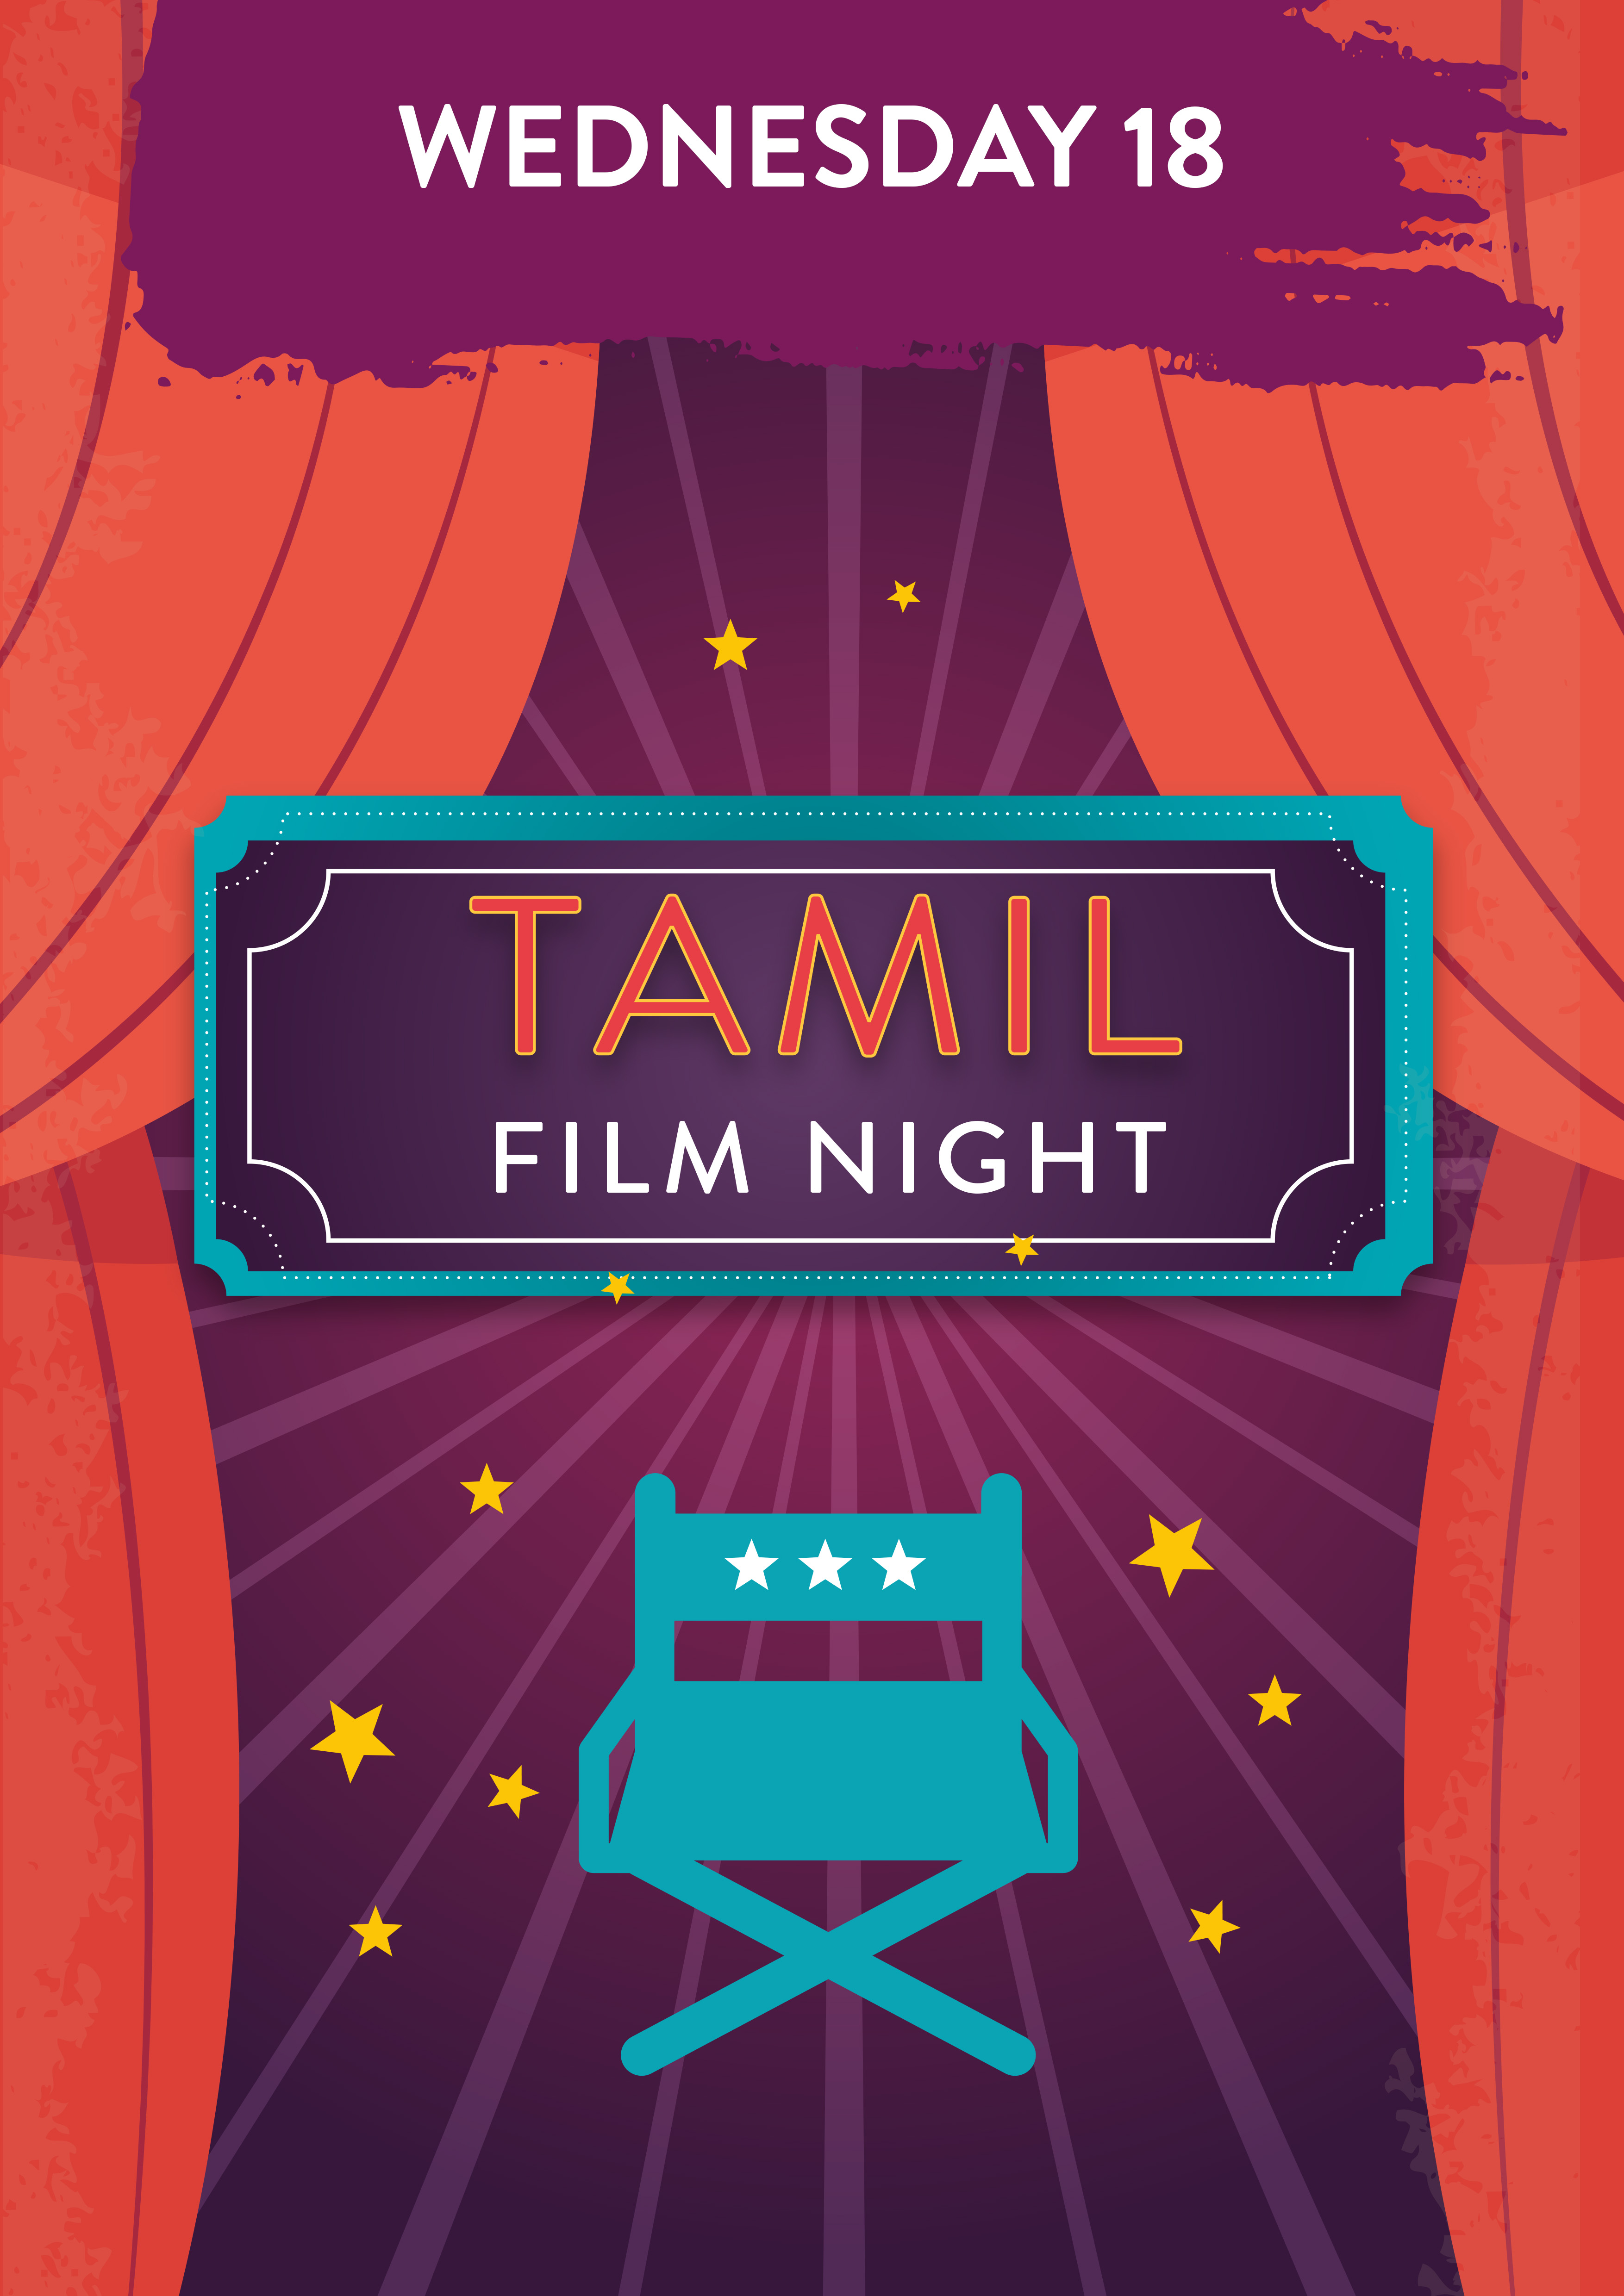 Wednesday 18 January. Tamil Film Night.